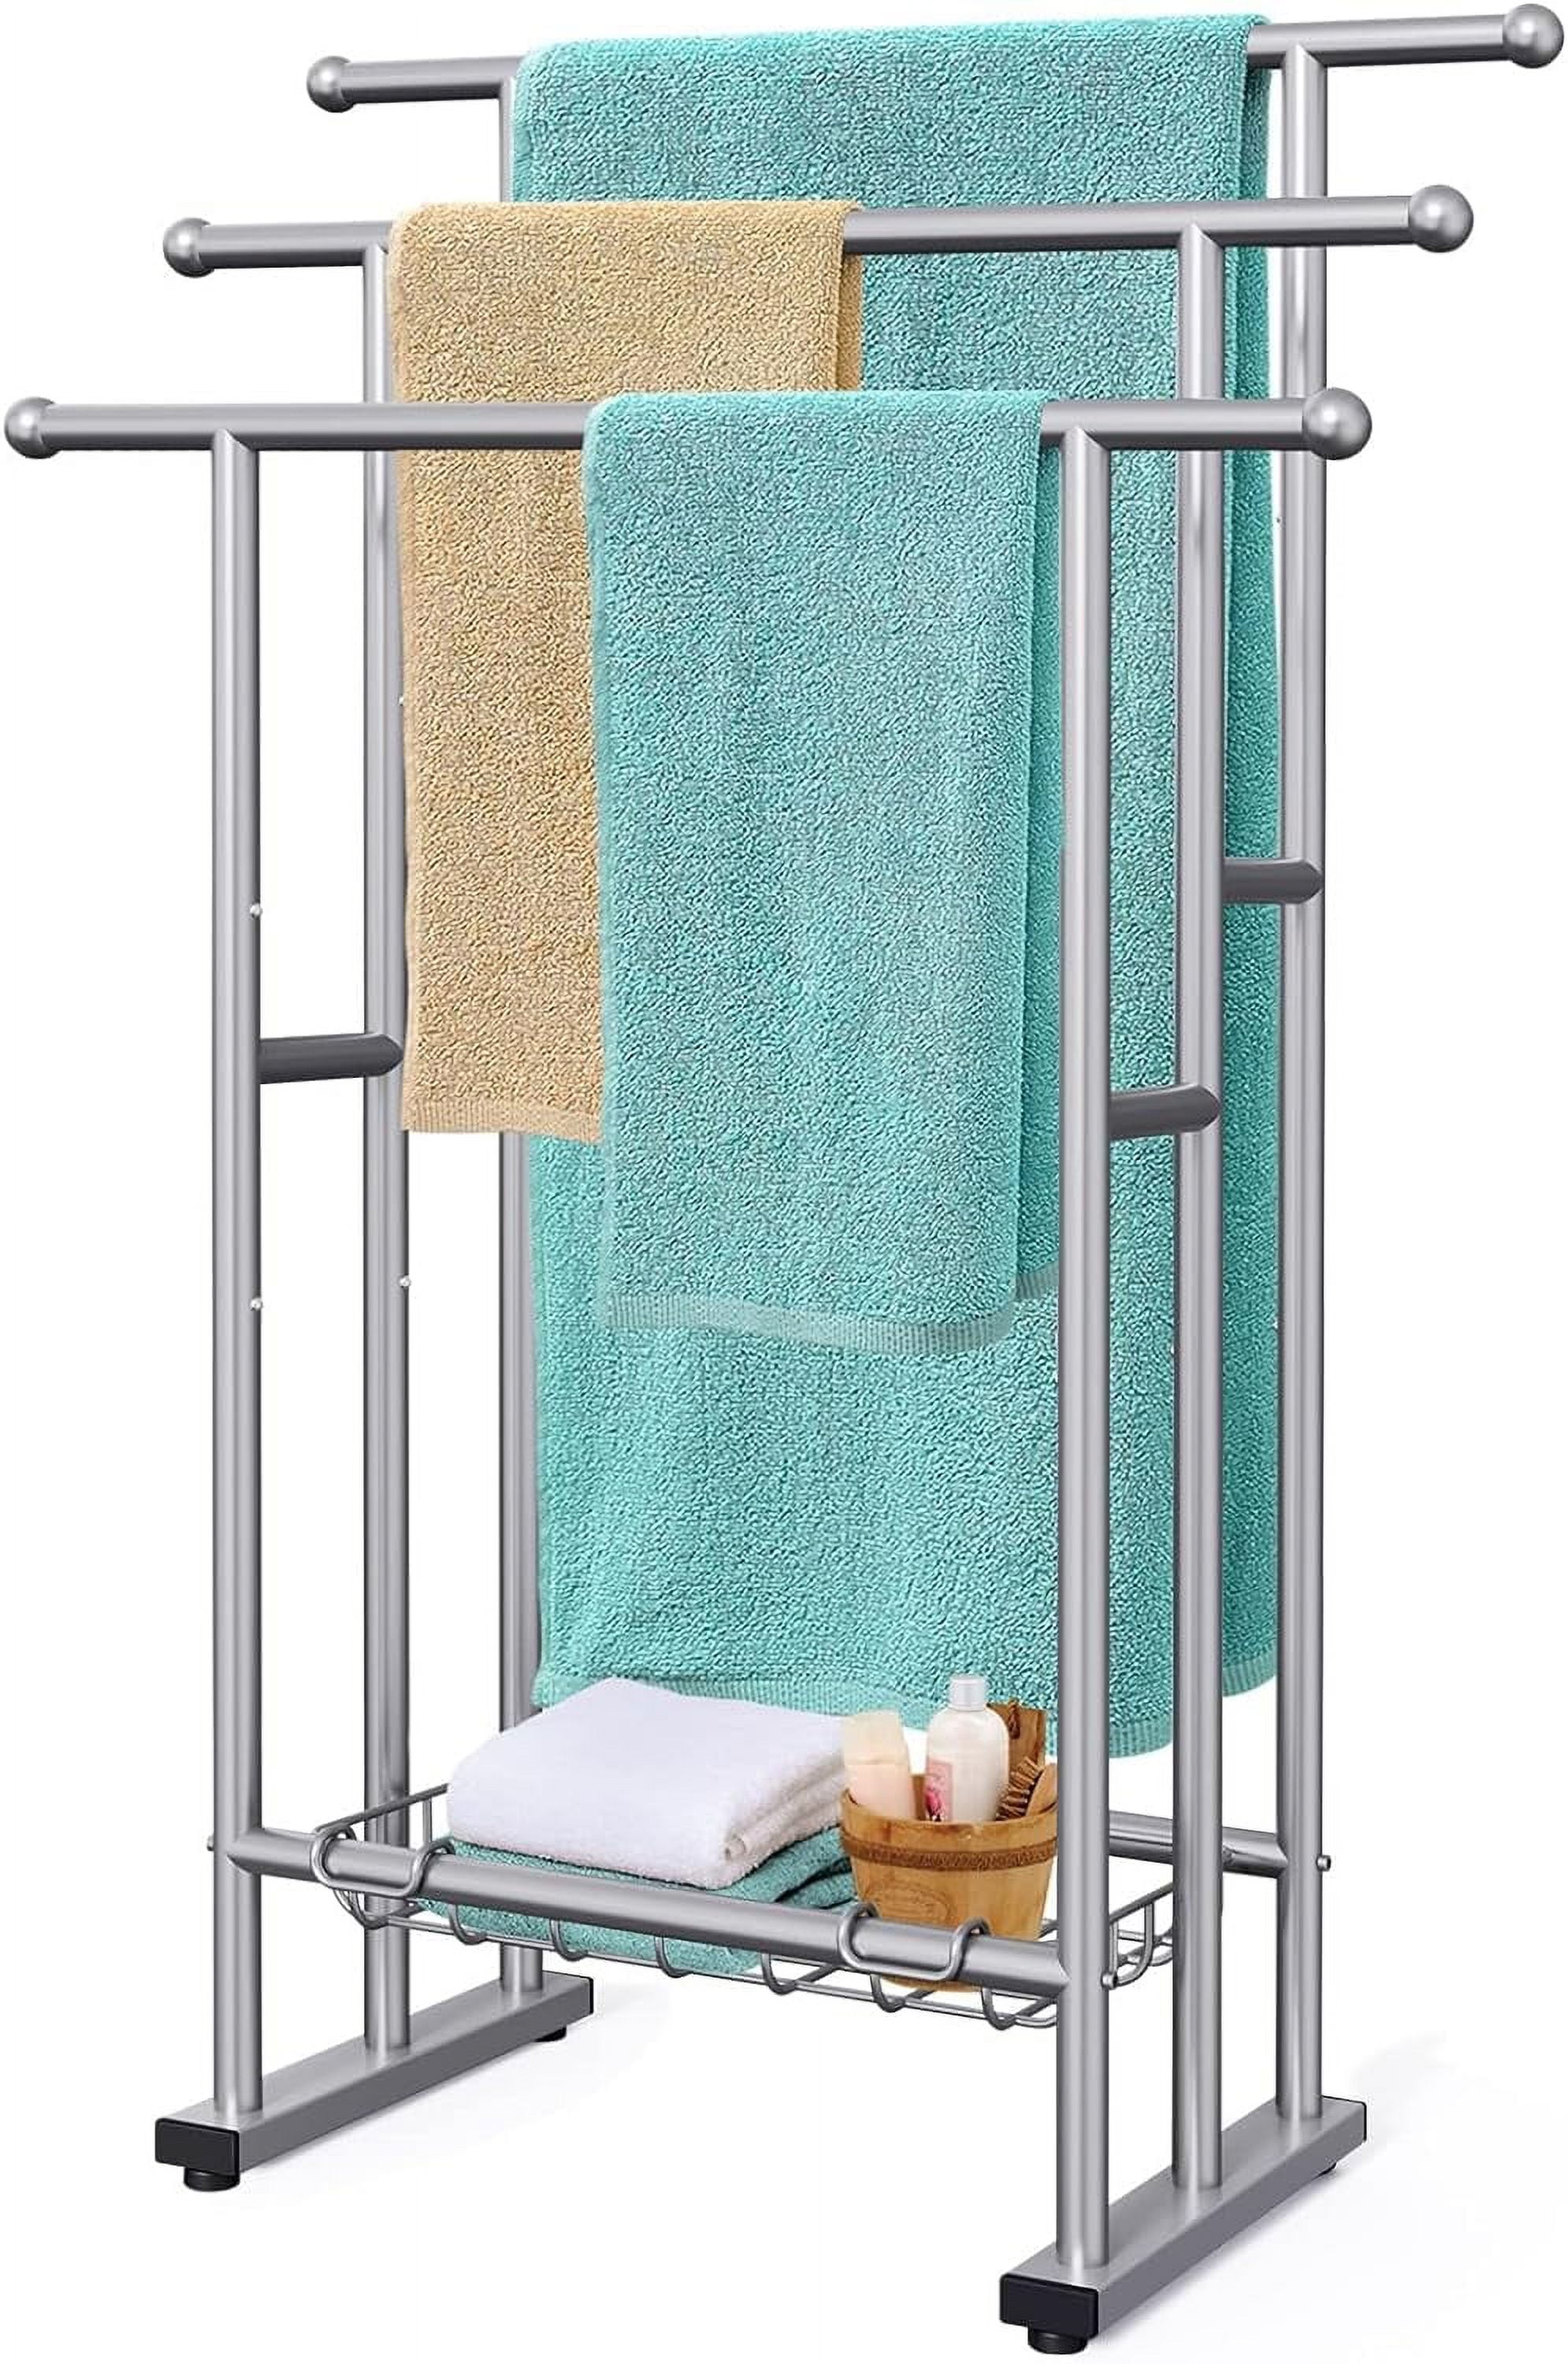 5 Tier Over The Door Towel Rack Bathroom Behind Door Towel Holder with Hooks, Size: 53.35, Black